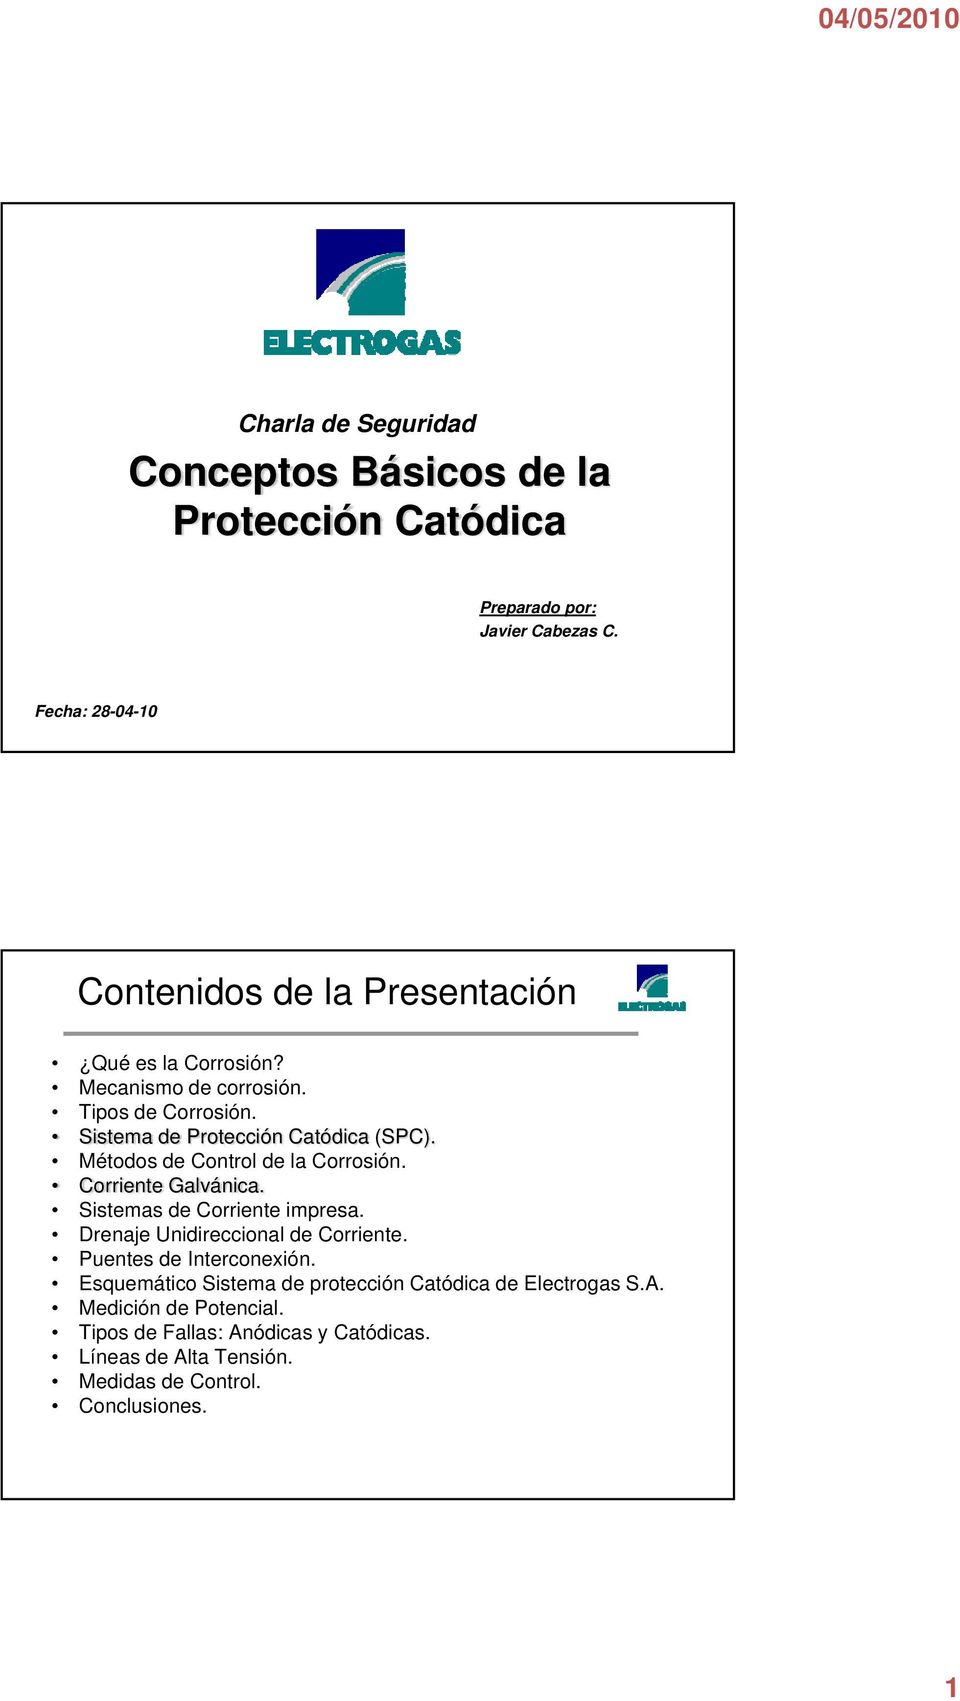 Sistema de Protección Catódica (SPC). Métodos de Control de la Corrosión. Corriente Galvánica. Sistemas de Corriente impresa.